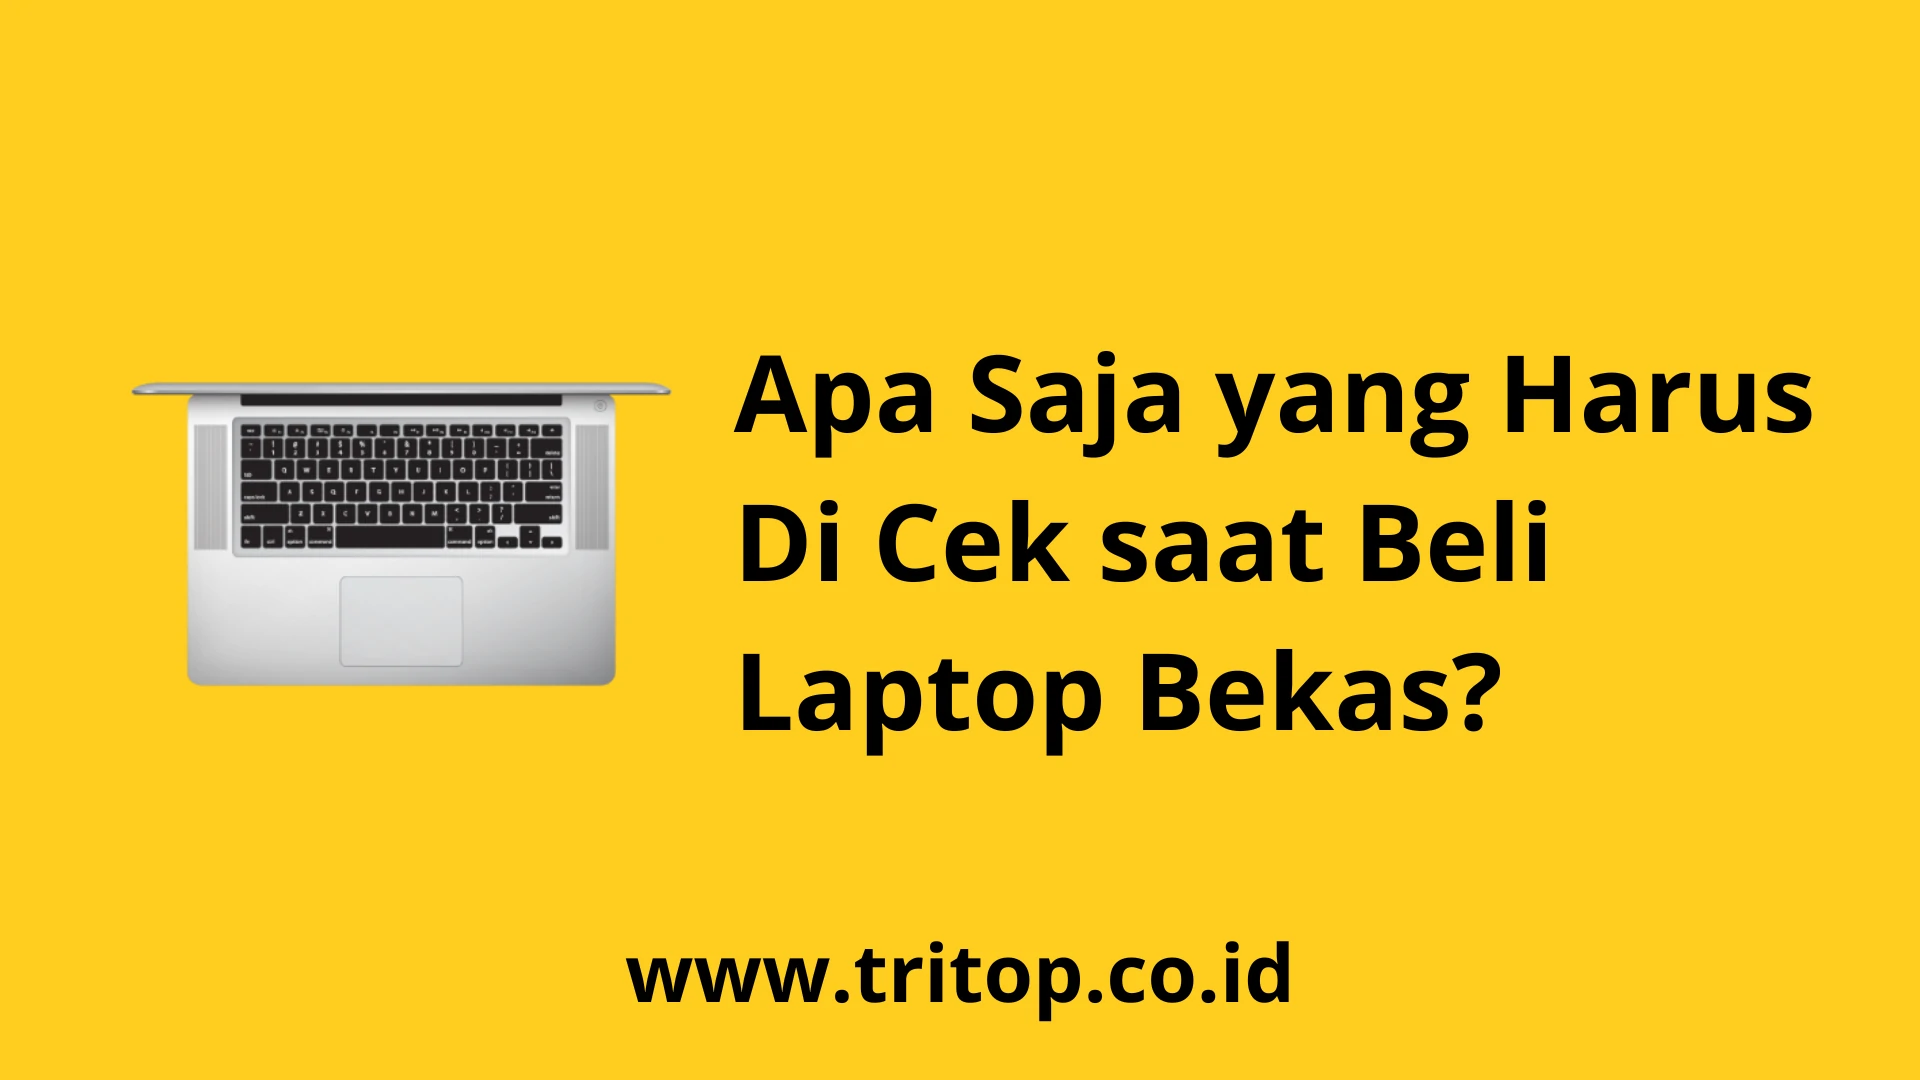 yang Harus Di Cek saat Beli Laptop Bekas www.tritop.co.id